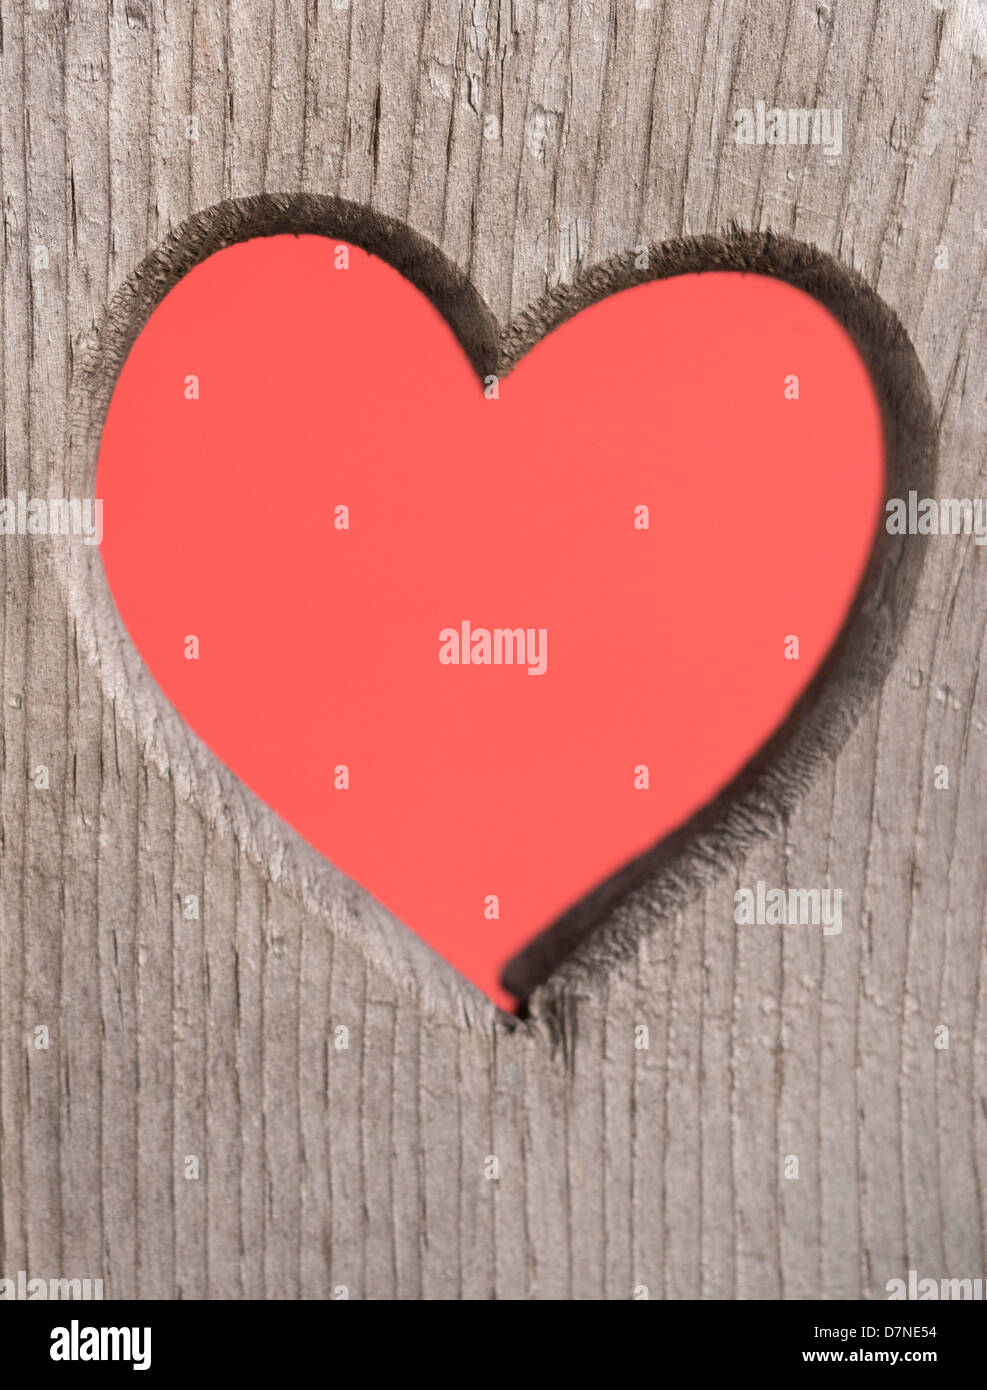 Coeur rouge découpé dans une planche en bois Banque D'Images